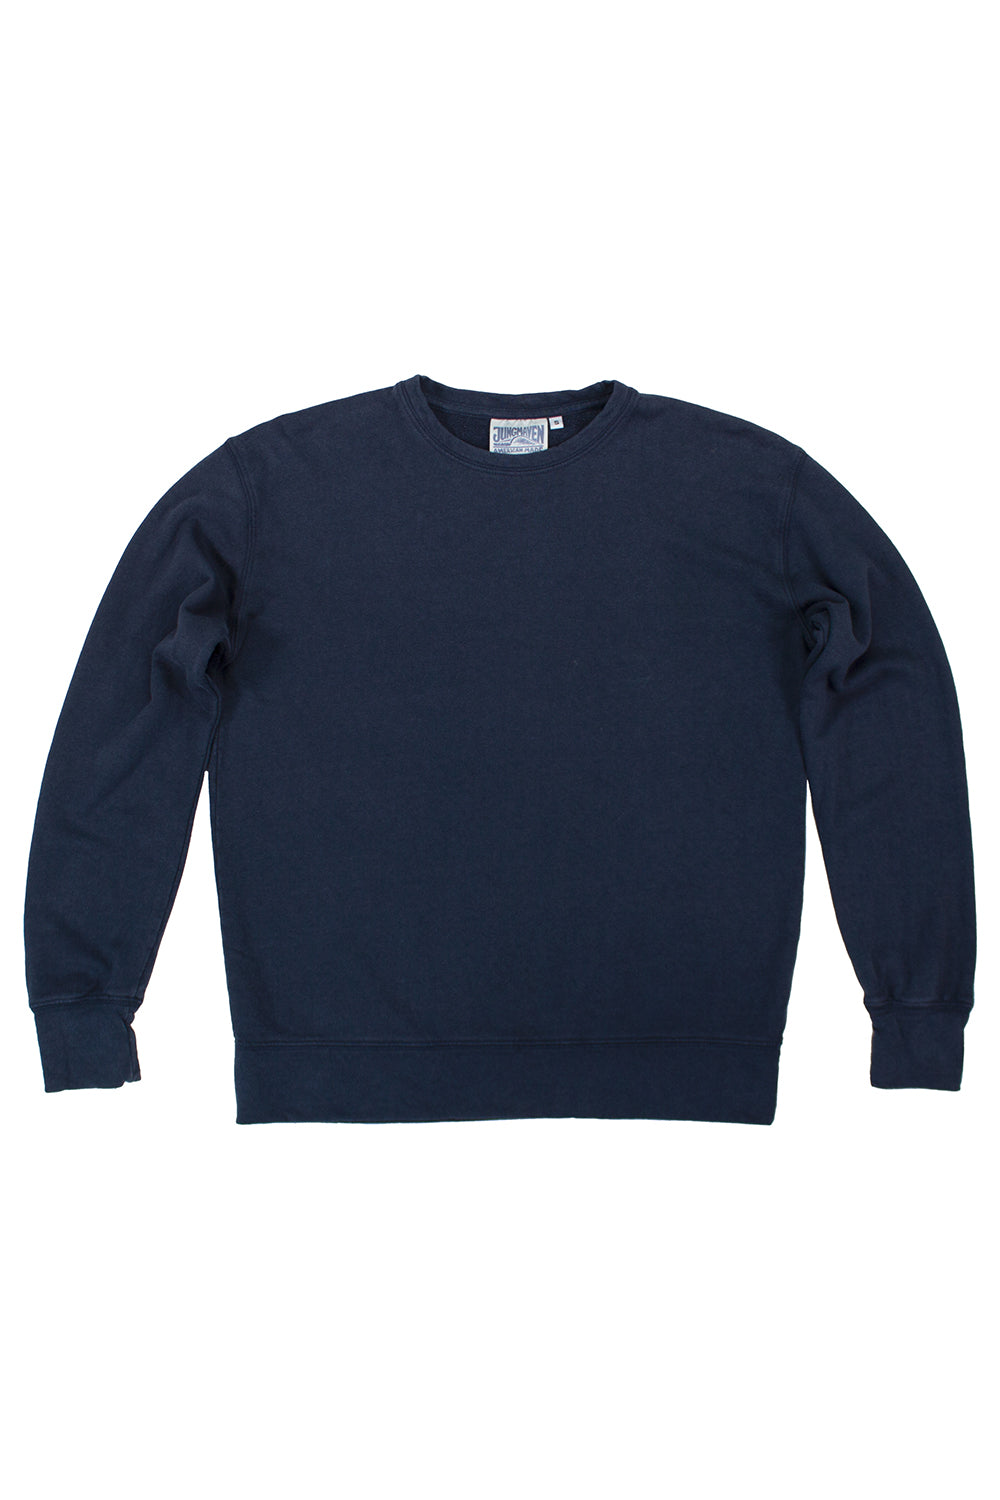 Tahoe Sweatshirt | Jungmaven Hemp Clothing & Accessories / Color: Navy